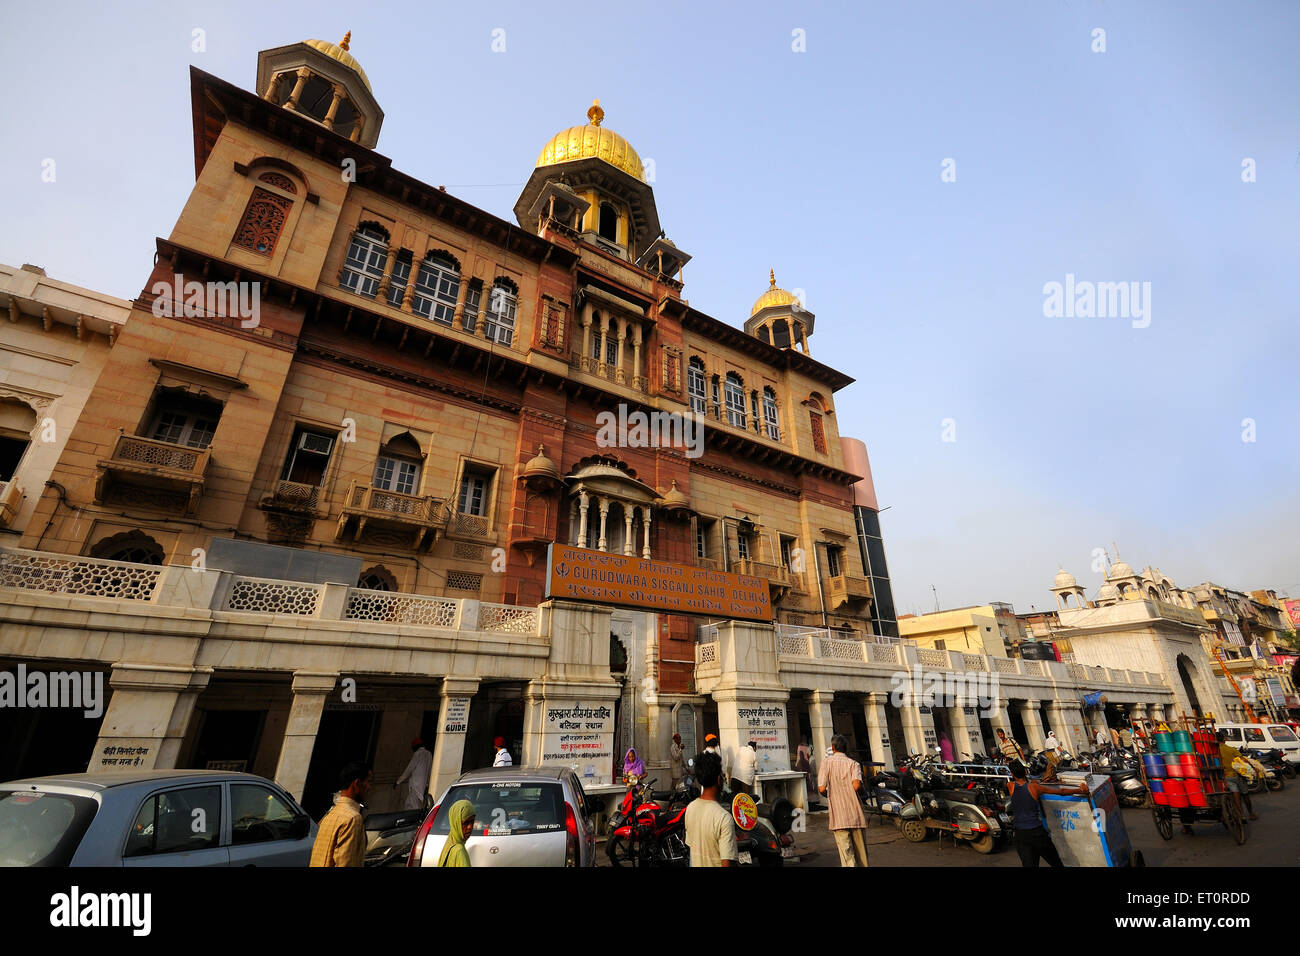 Gurdwara sisganj sahib ; Delhi ; India Stock Photo